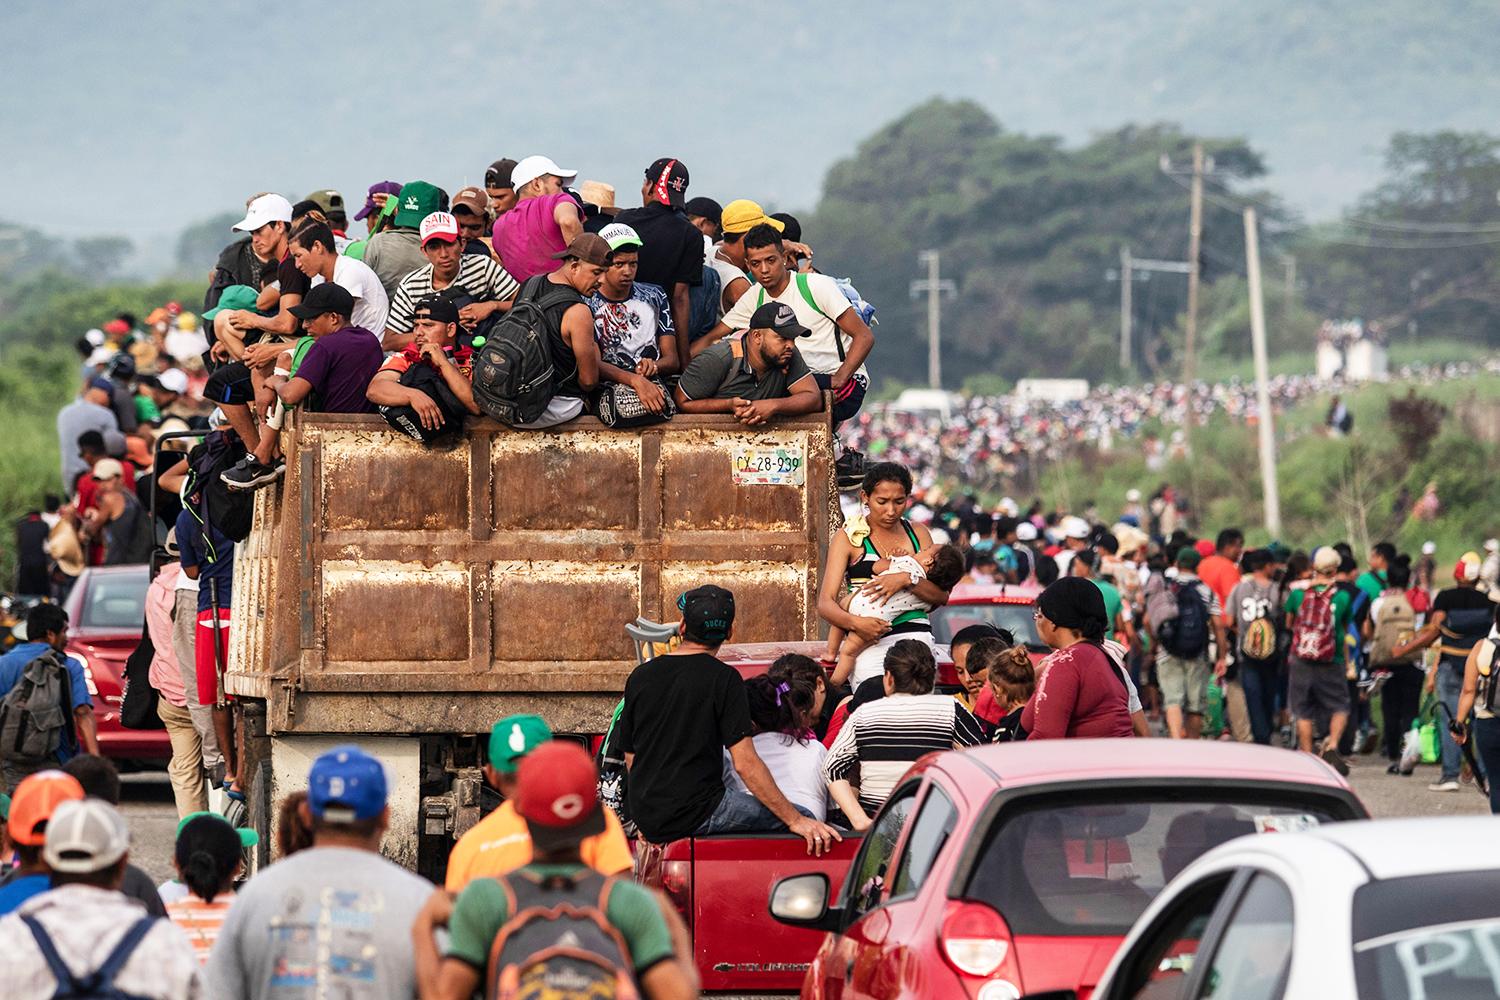 Centroamérica: la migración como válvula de escape